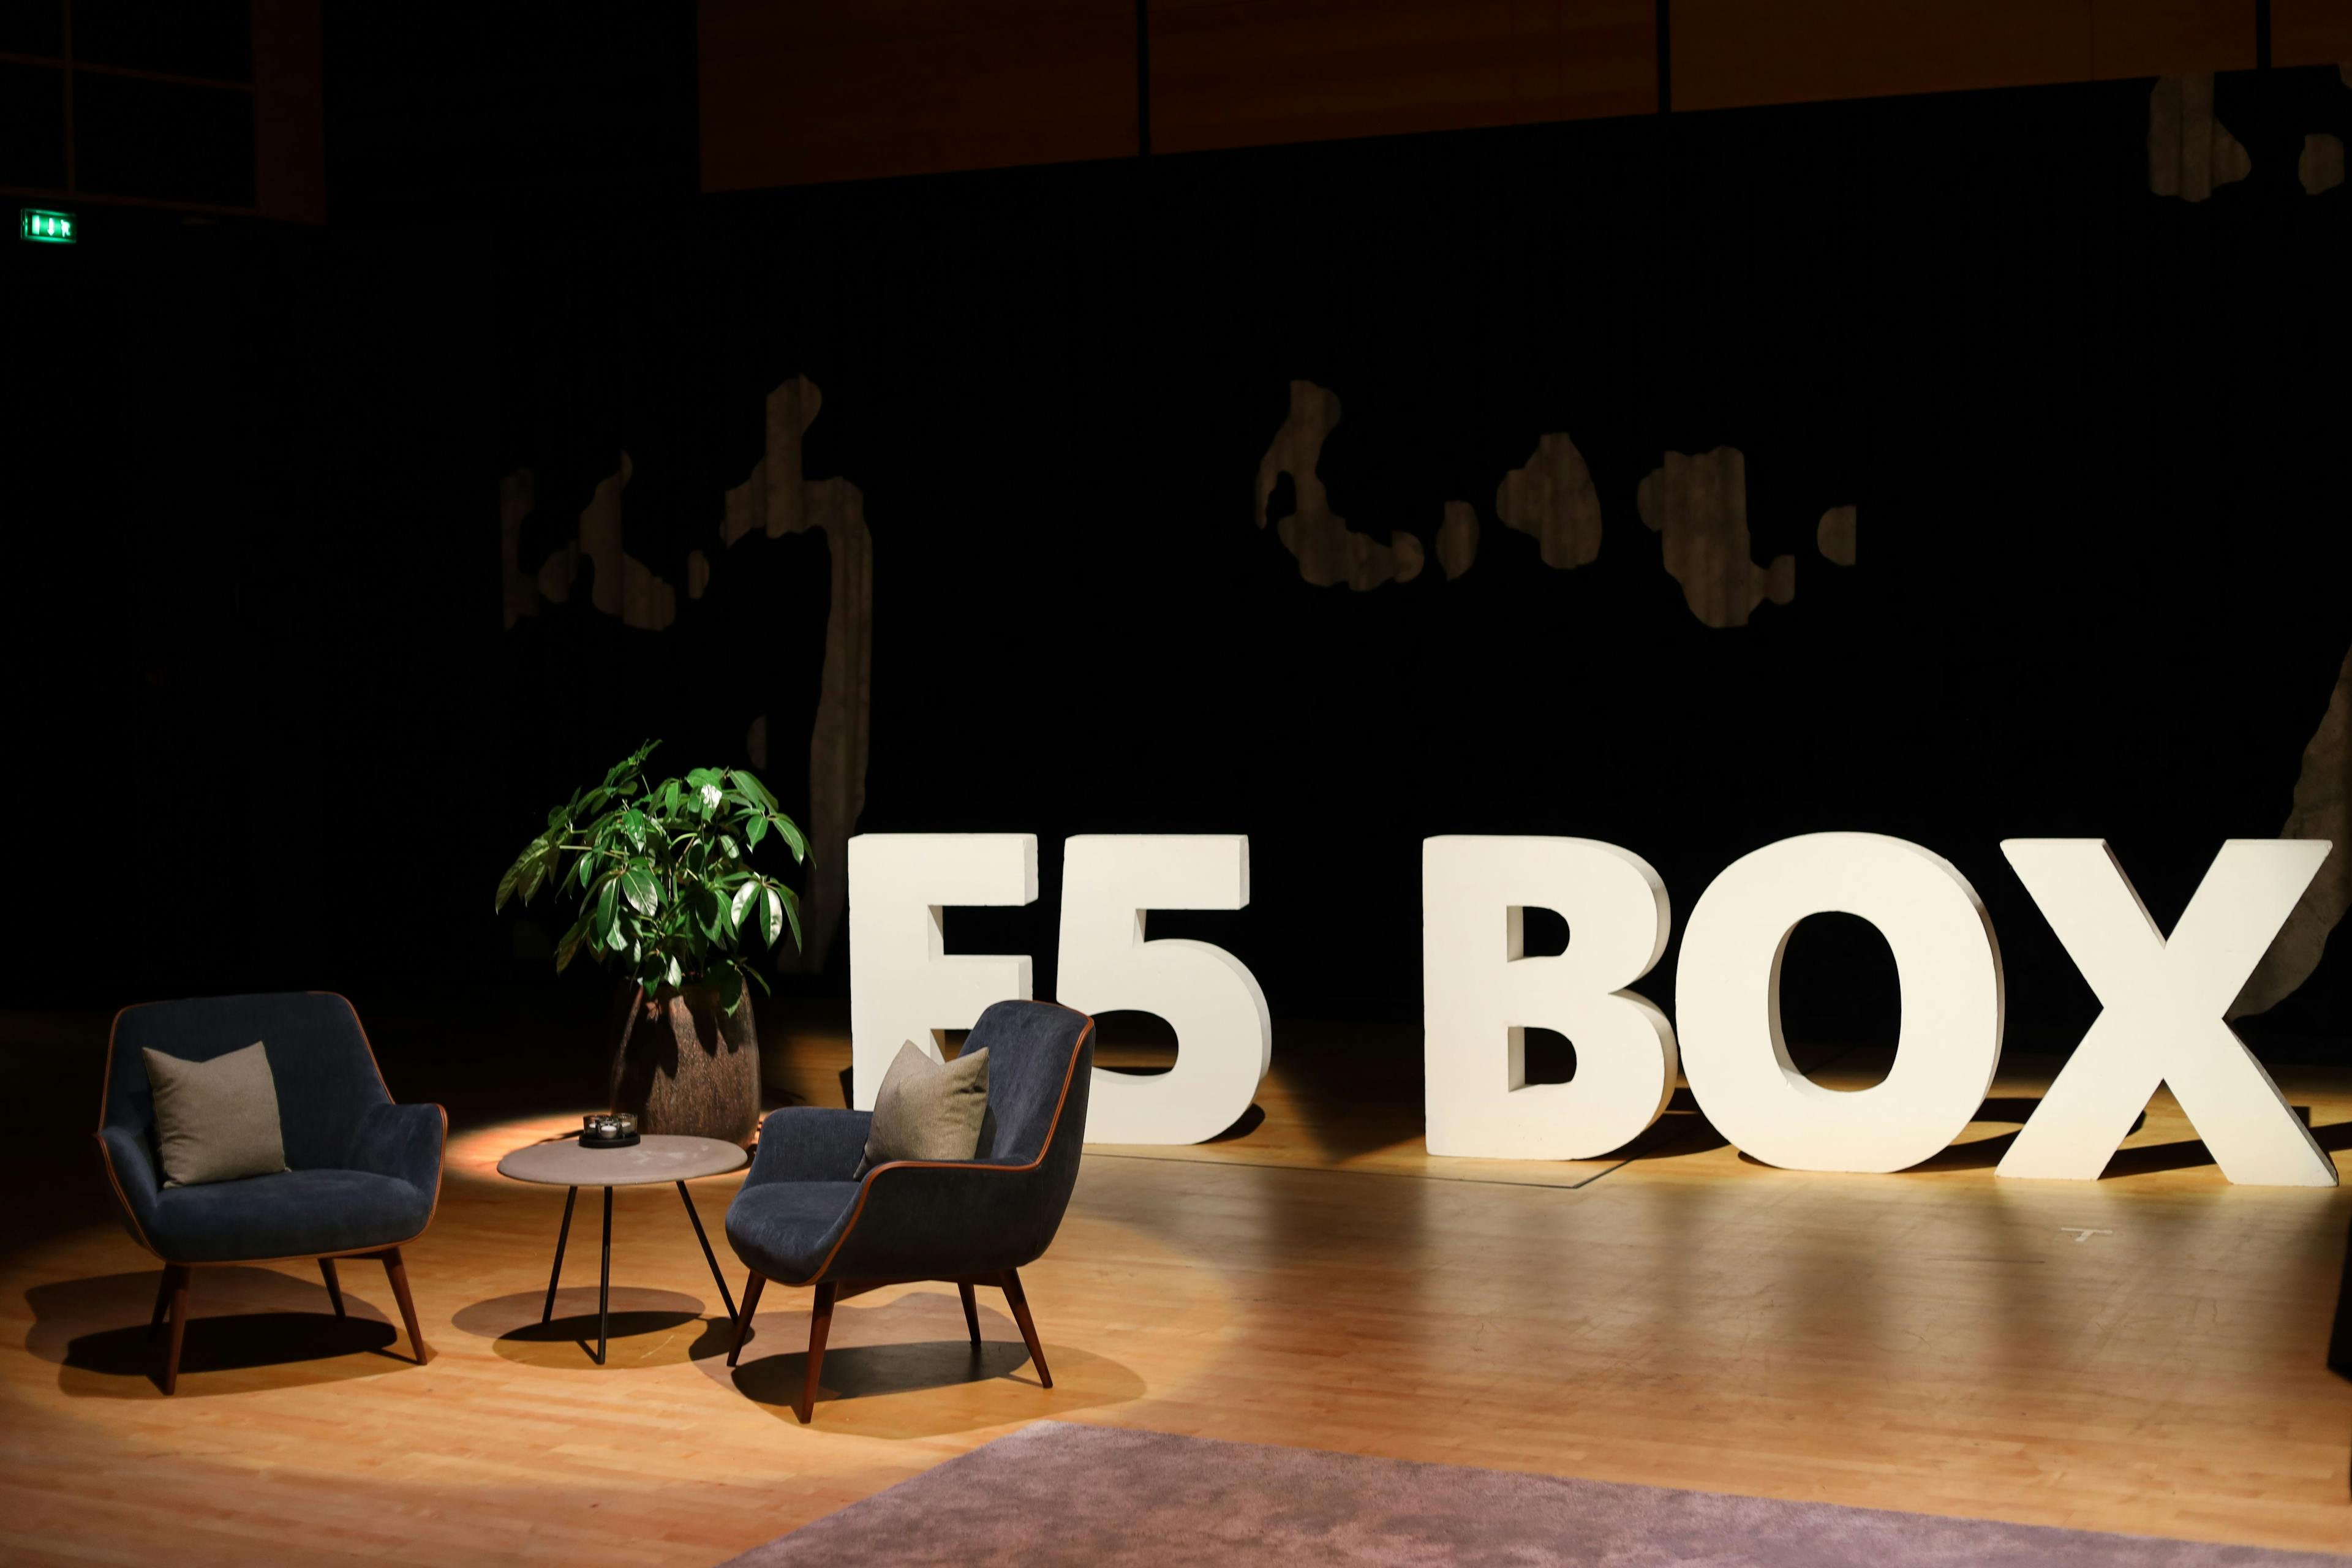 F5 BOX